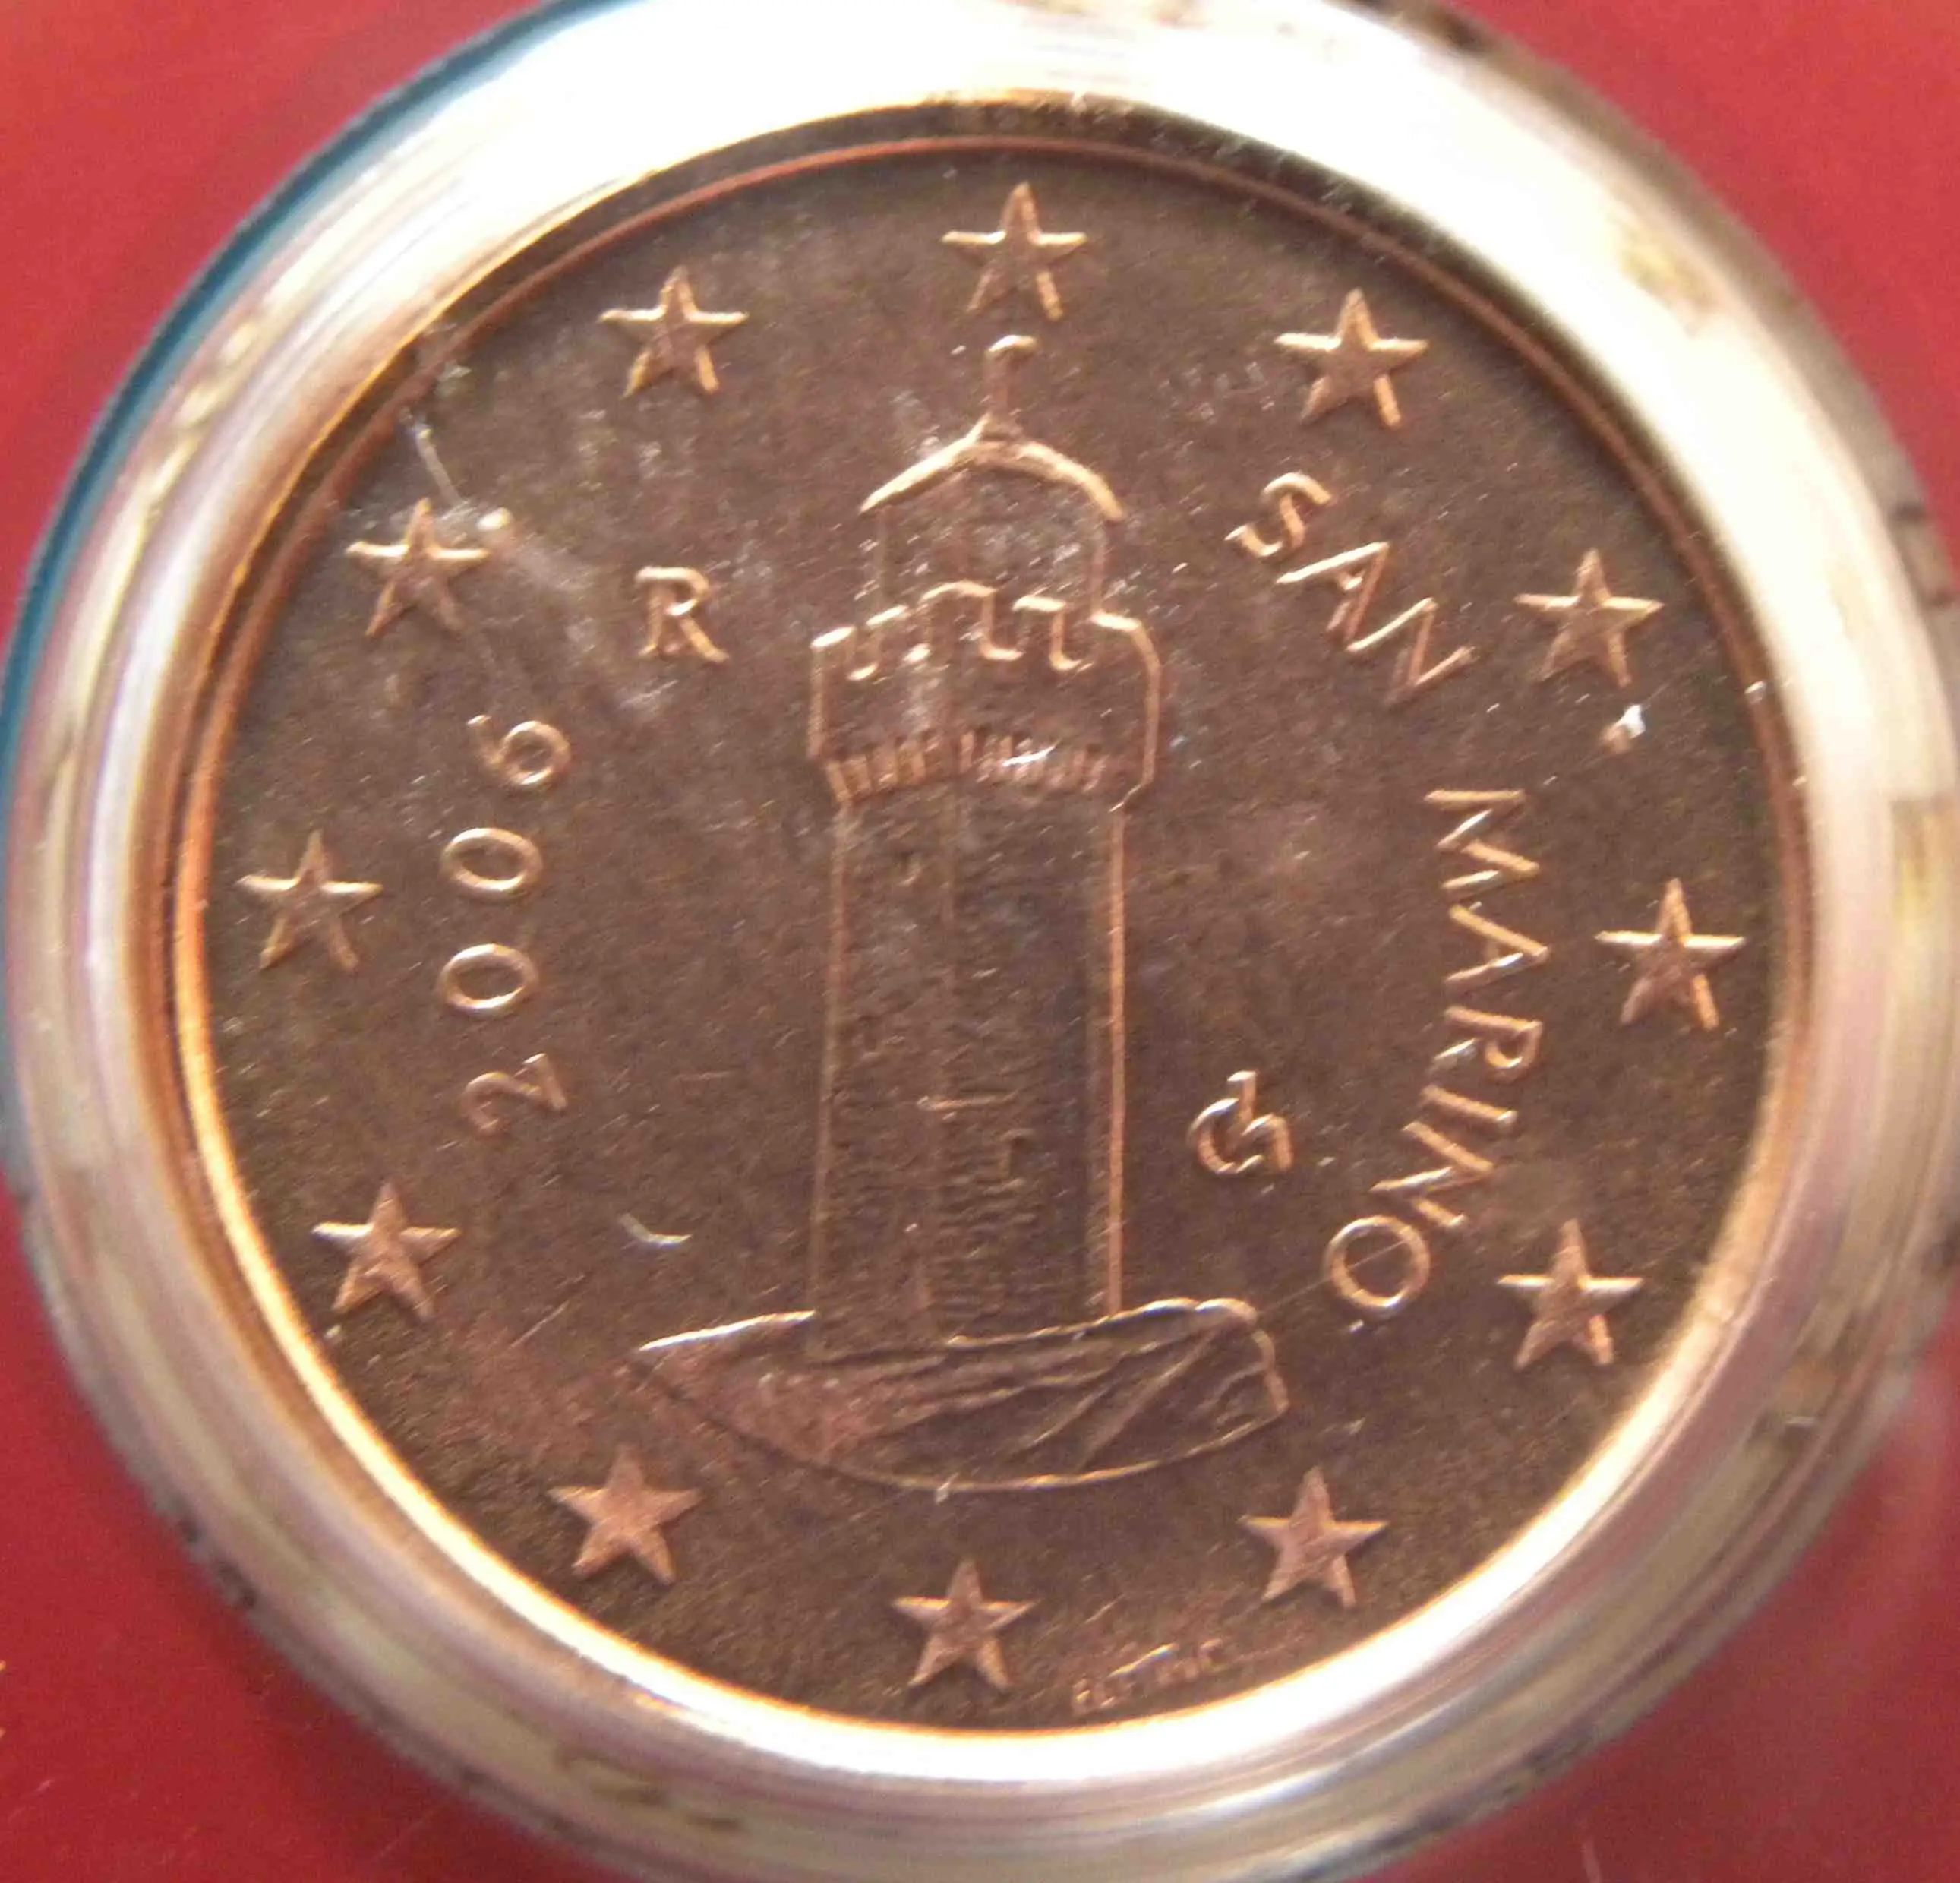 San Marino 1 Cent Münze 2006 Euro Muenzentv Der Online Euromünzen